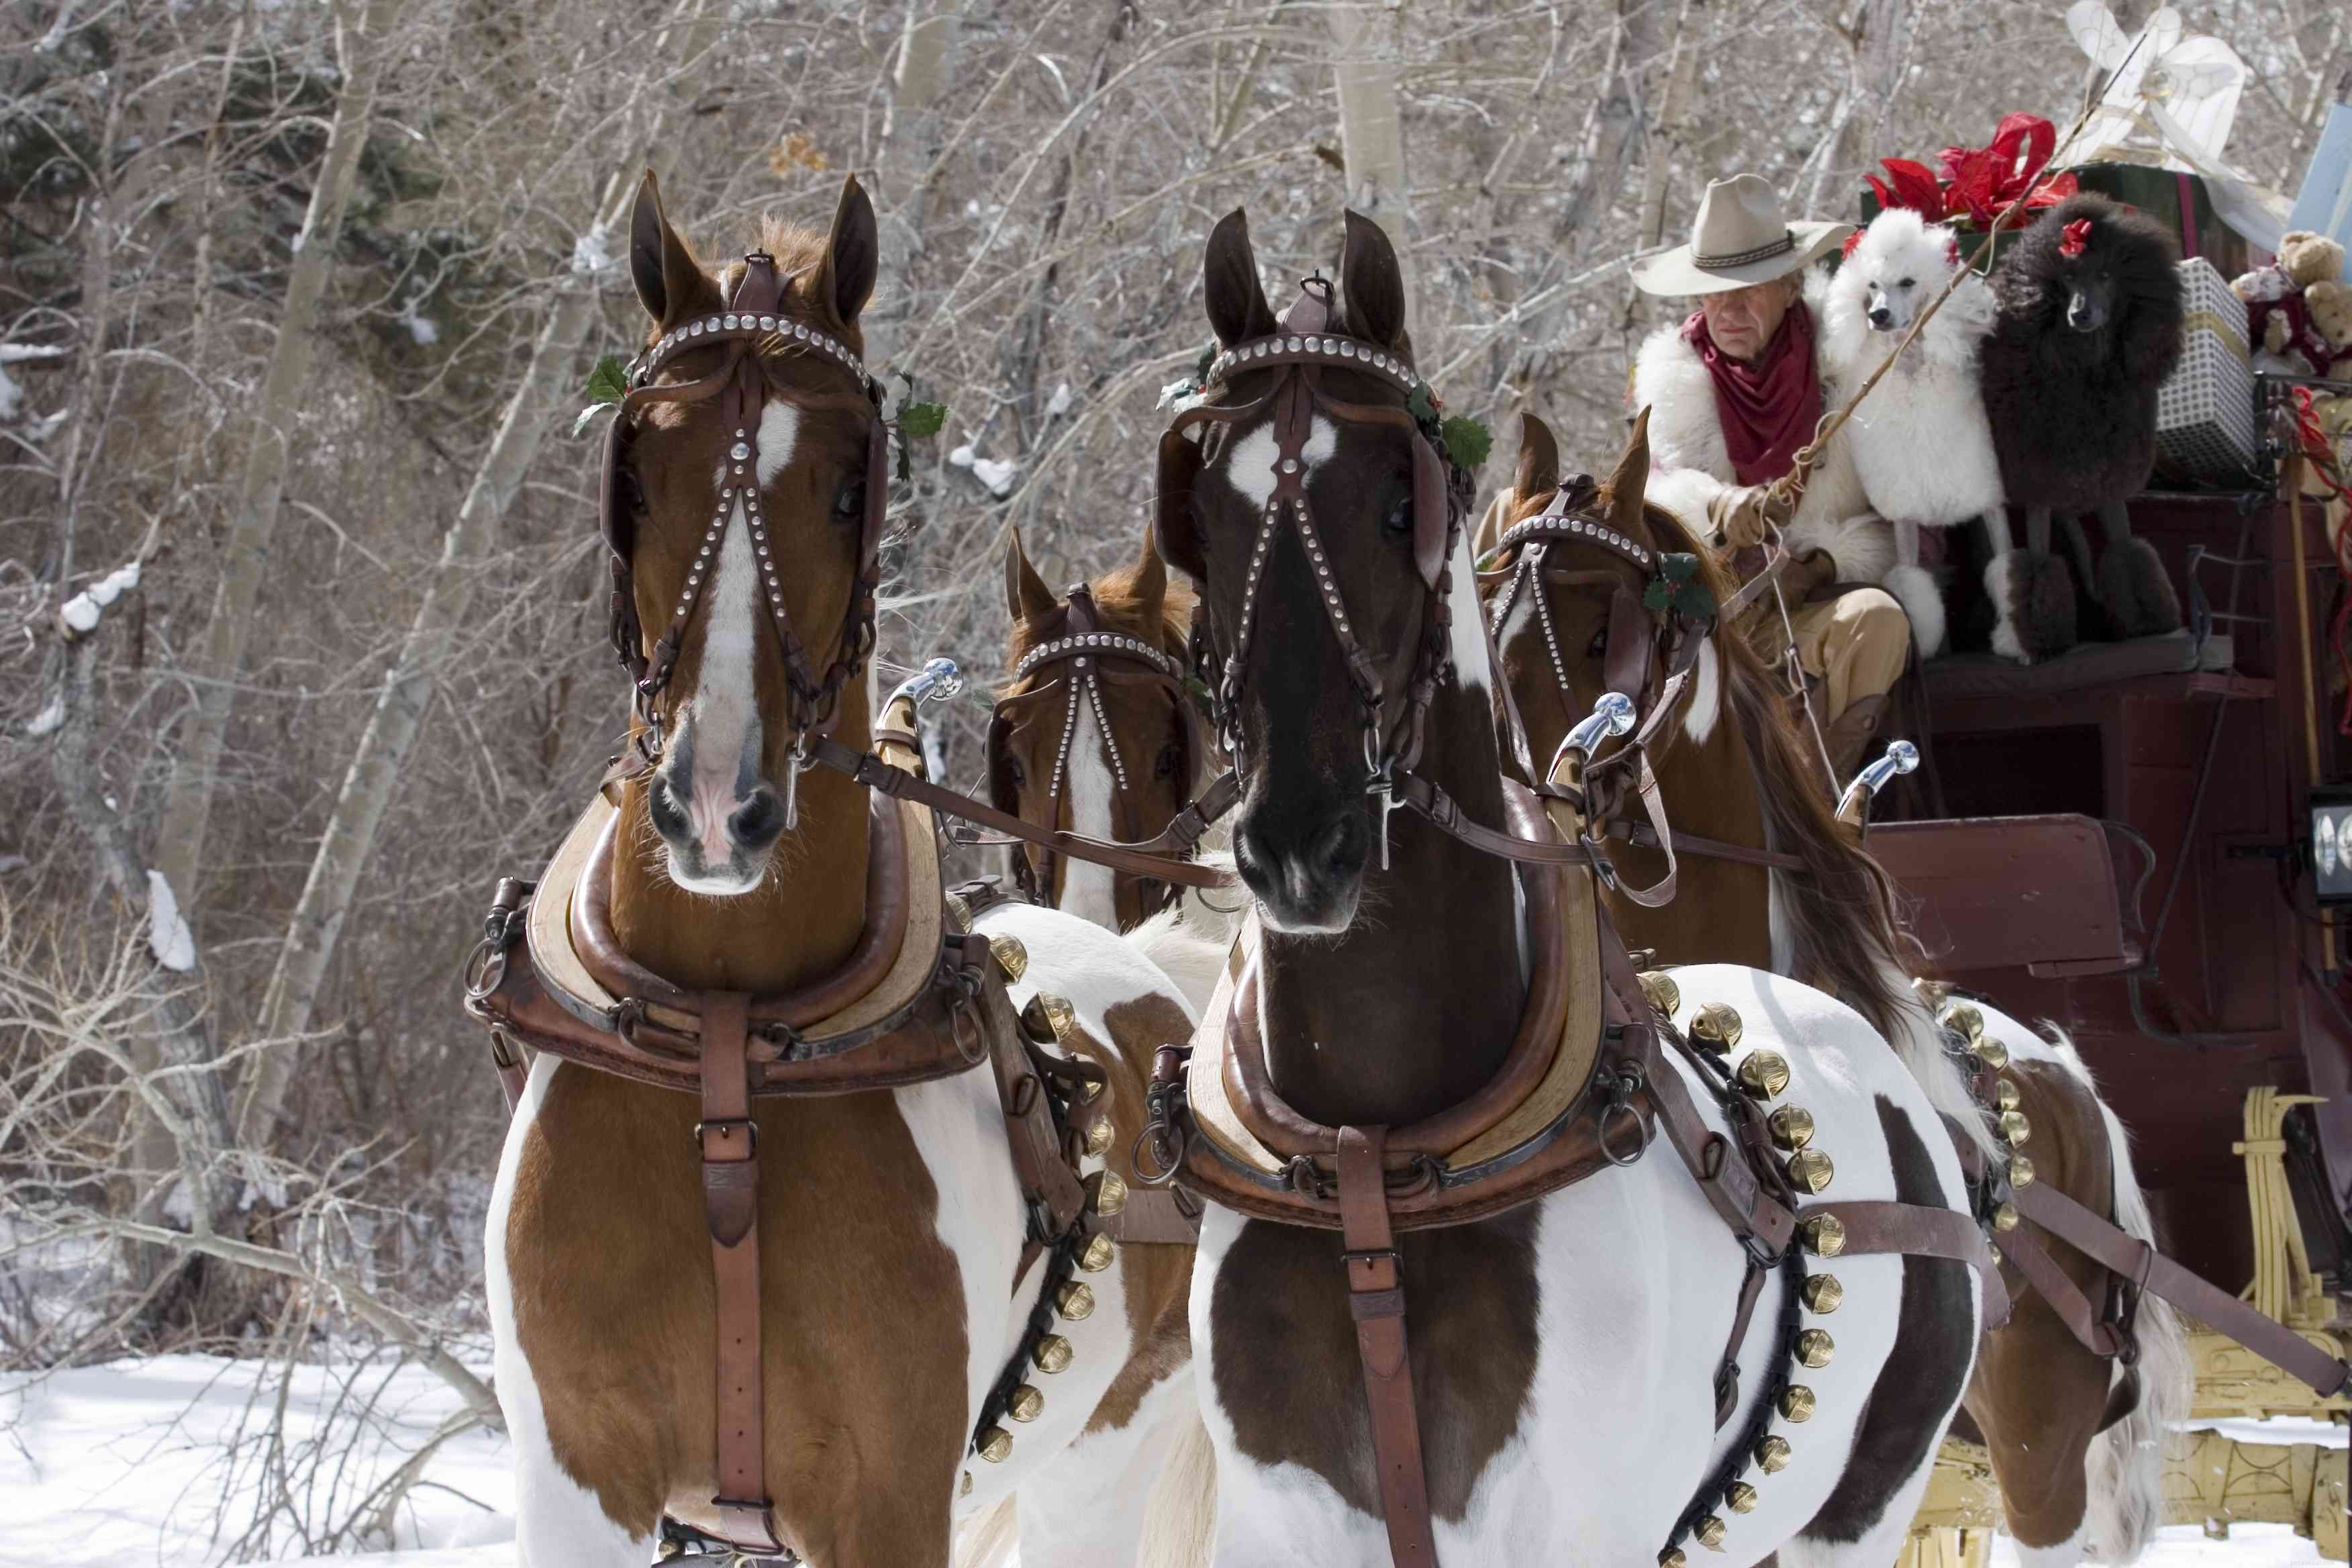 American Saddlebred:Perfil da raça do cavalo